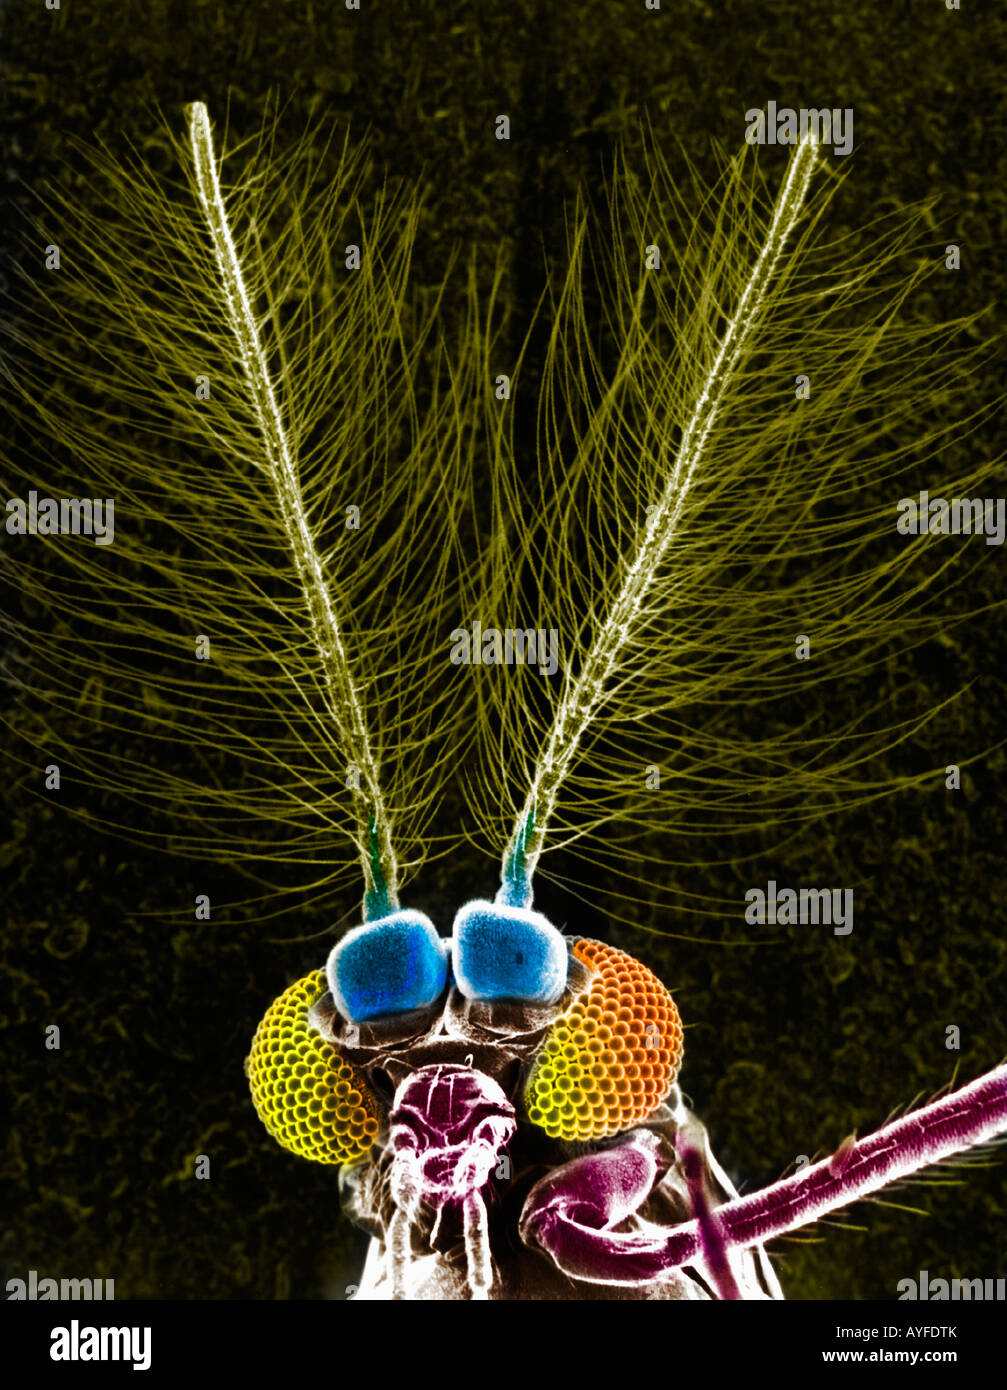 Antenne der Schmetterling gesehen durch ein EM-Mikroskop Stockfoto